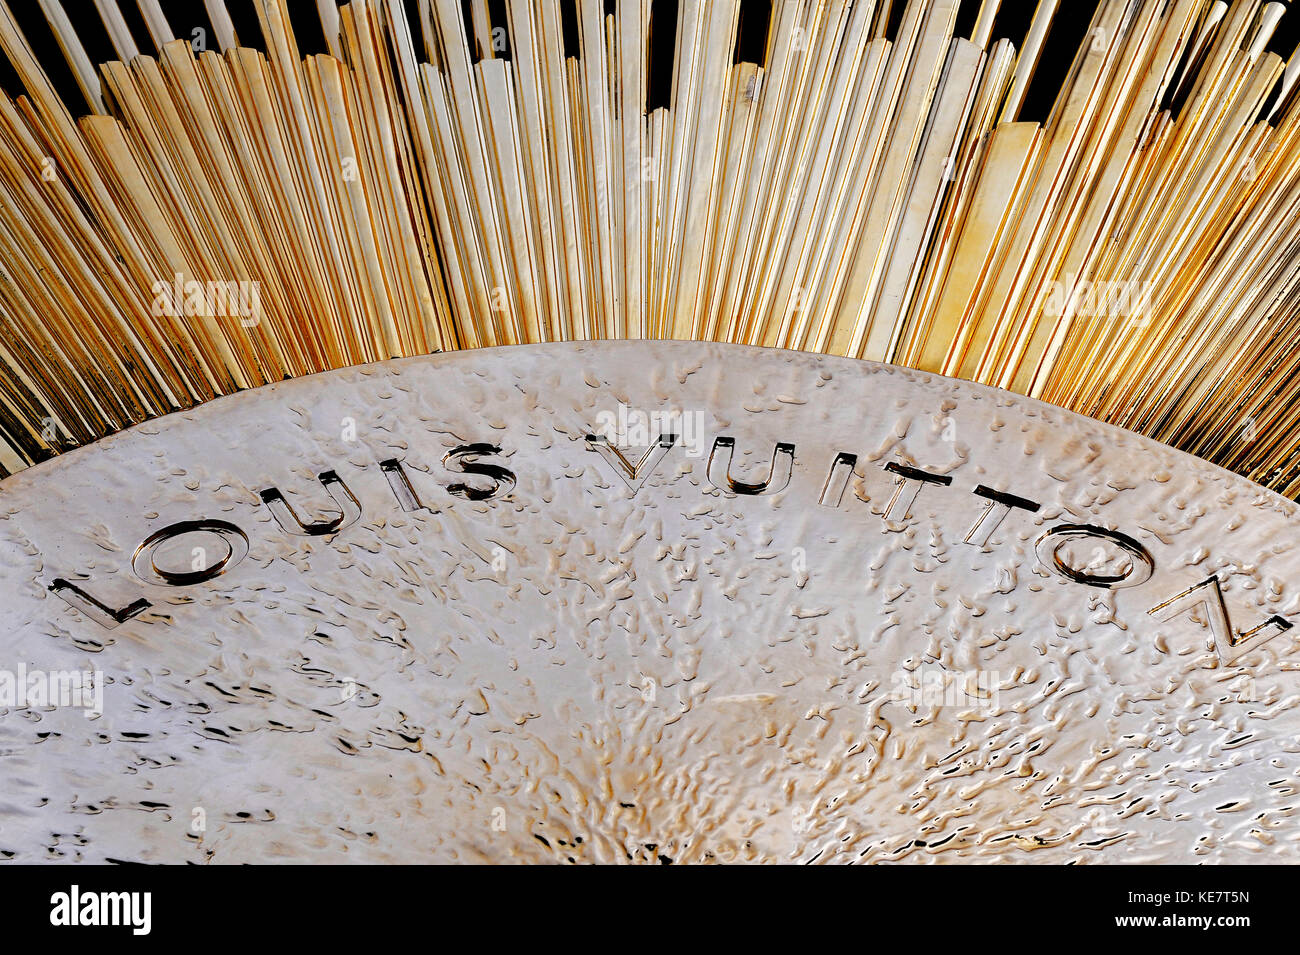 Louis Vuitton flagship store, place Vendôme, Paris - France Stock Photo